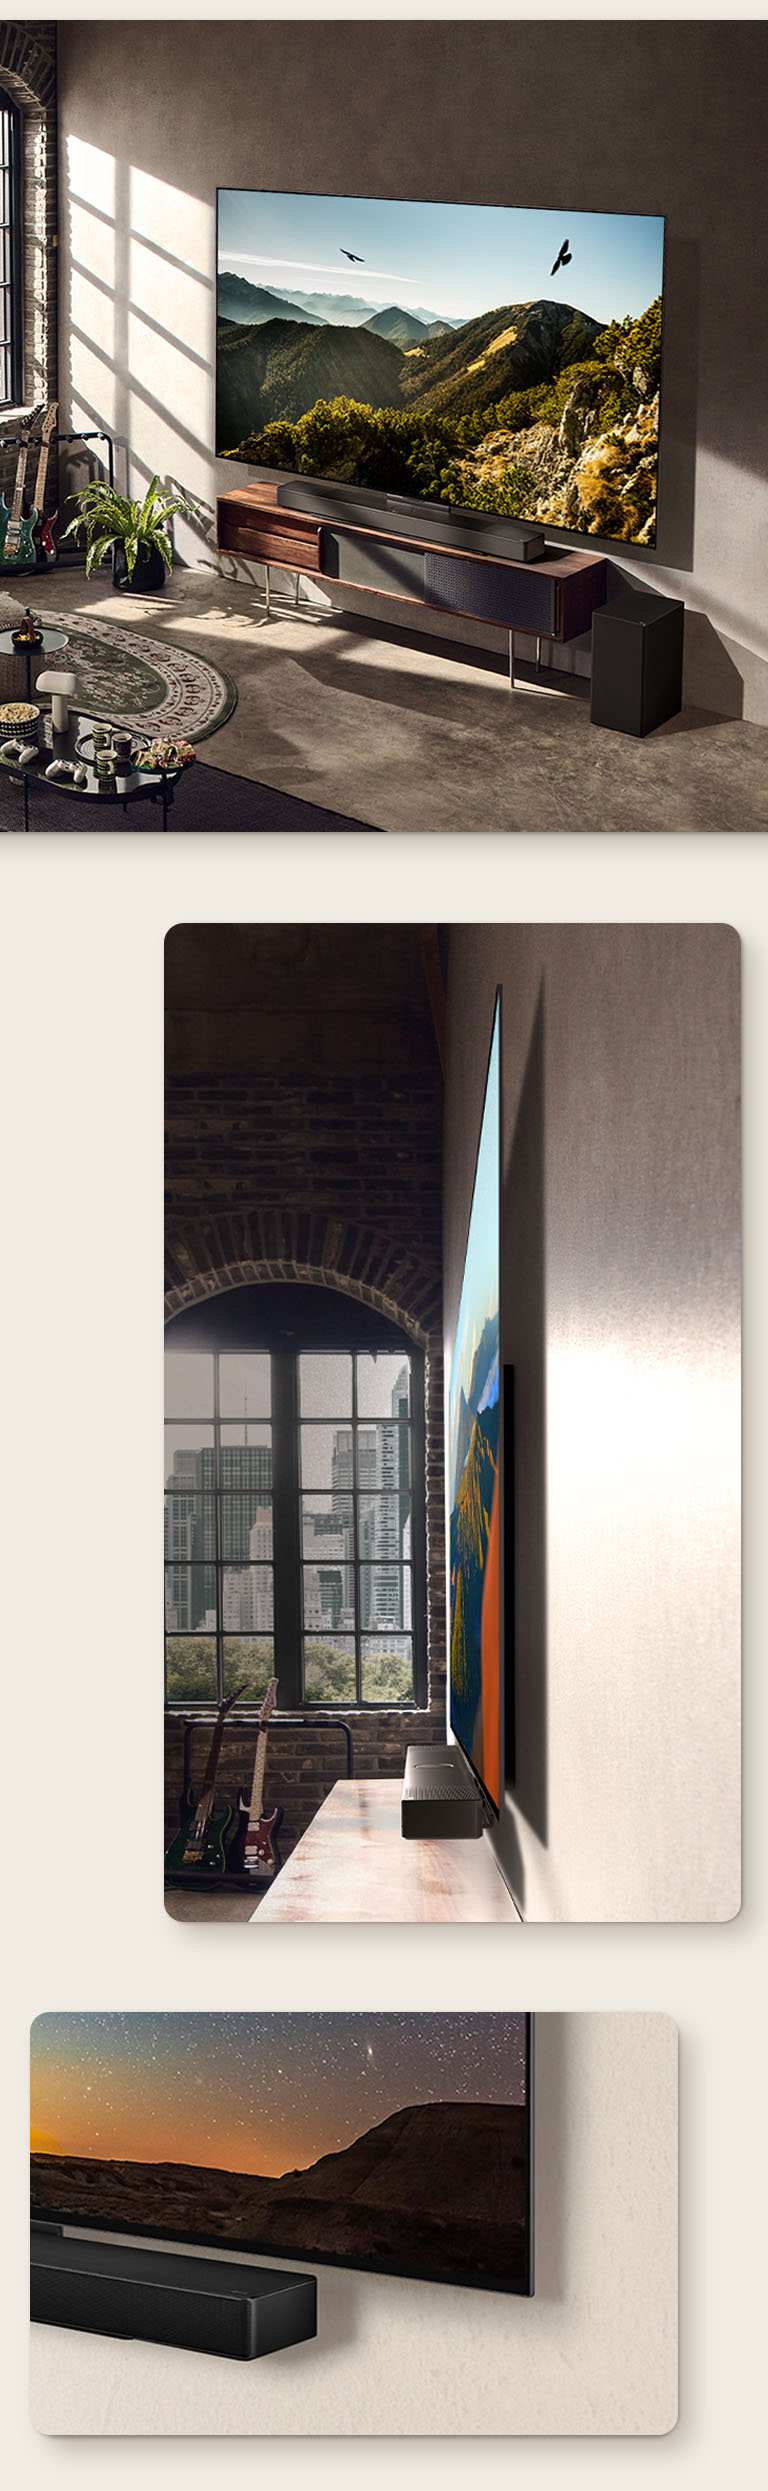 Une image du LG OLED C3 avec la barre de son fixés au mur dans un intérieur artistique. Une vue latérale mettant en avant la finesse des dimensions du LG OLED C3 devant une fenêtre donnant sur un paysage urbain. Le coin inférieur du LG OLED C3 et de la barre de son.